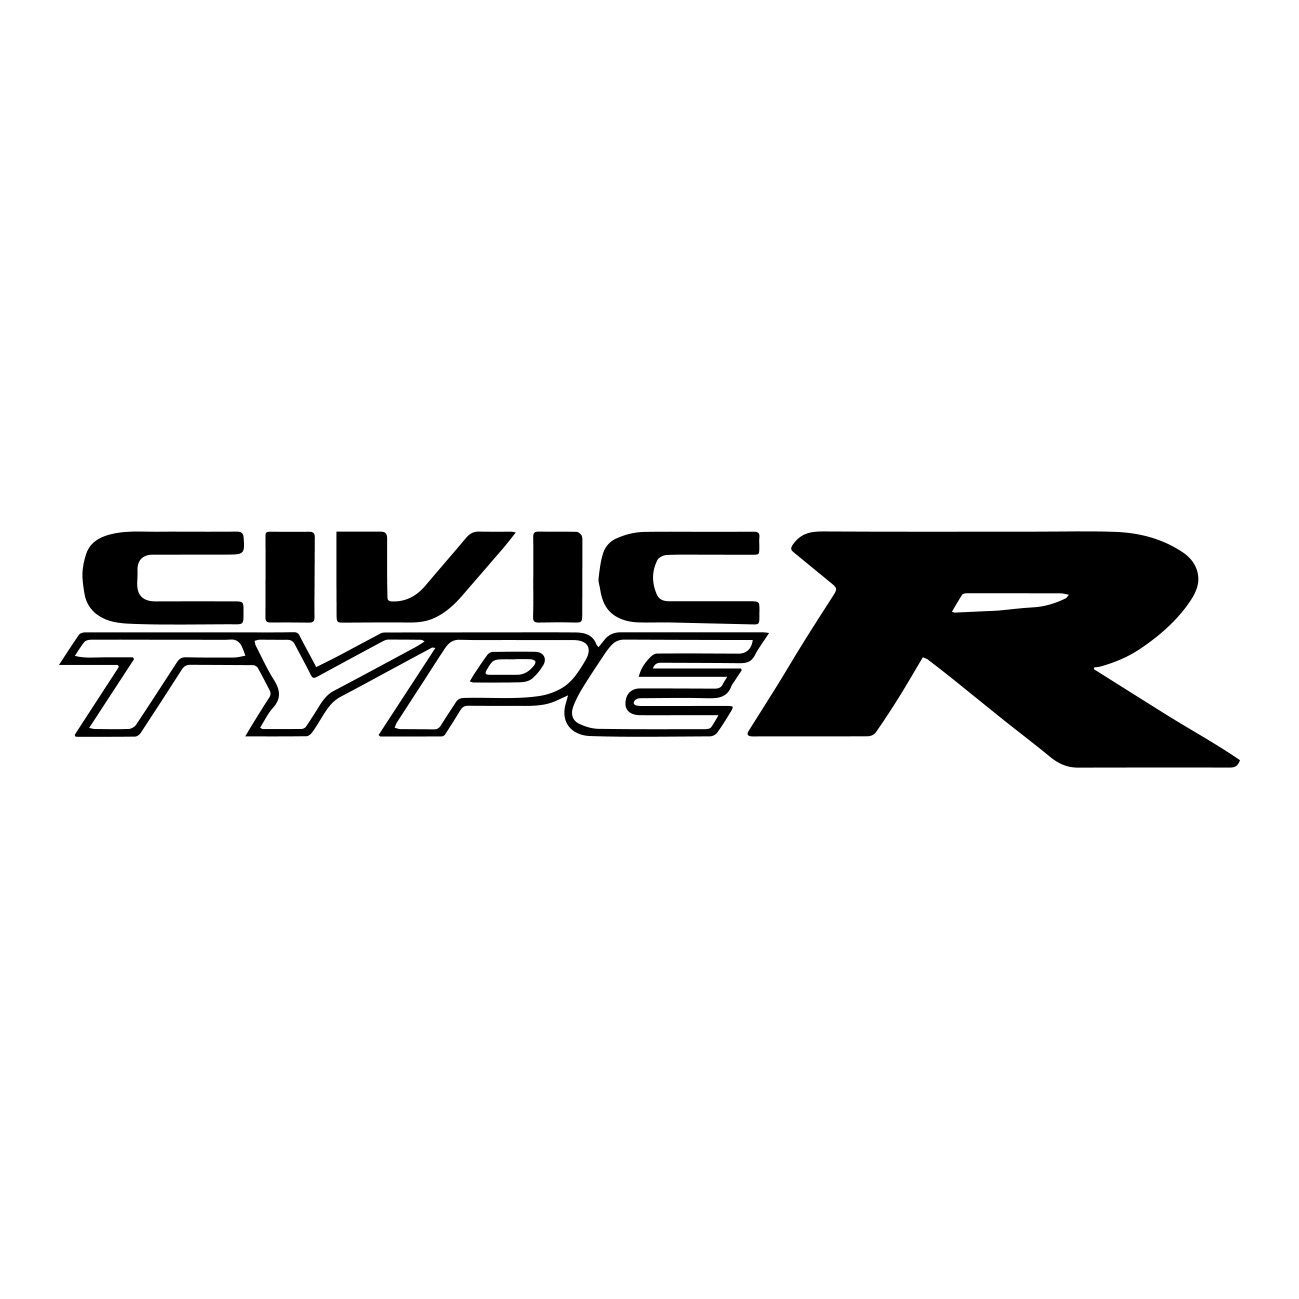 honda civic type r logo